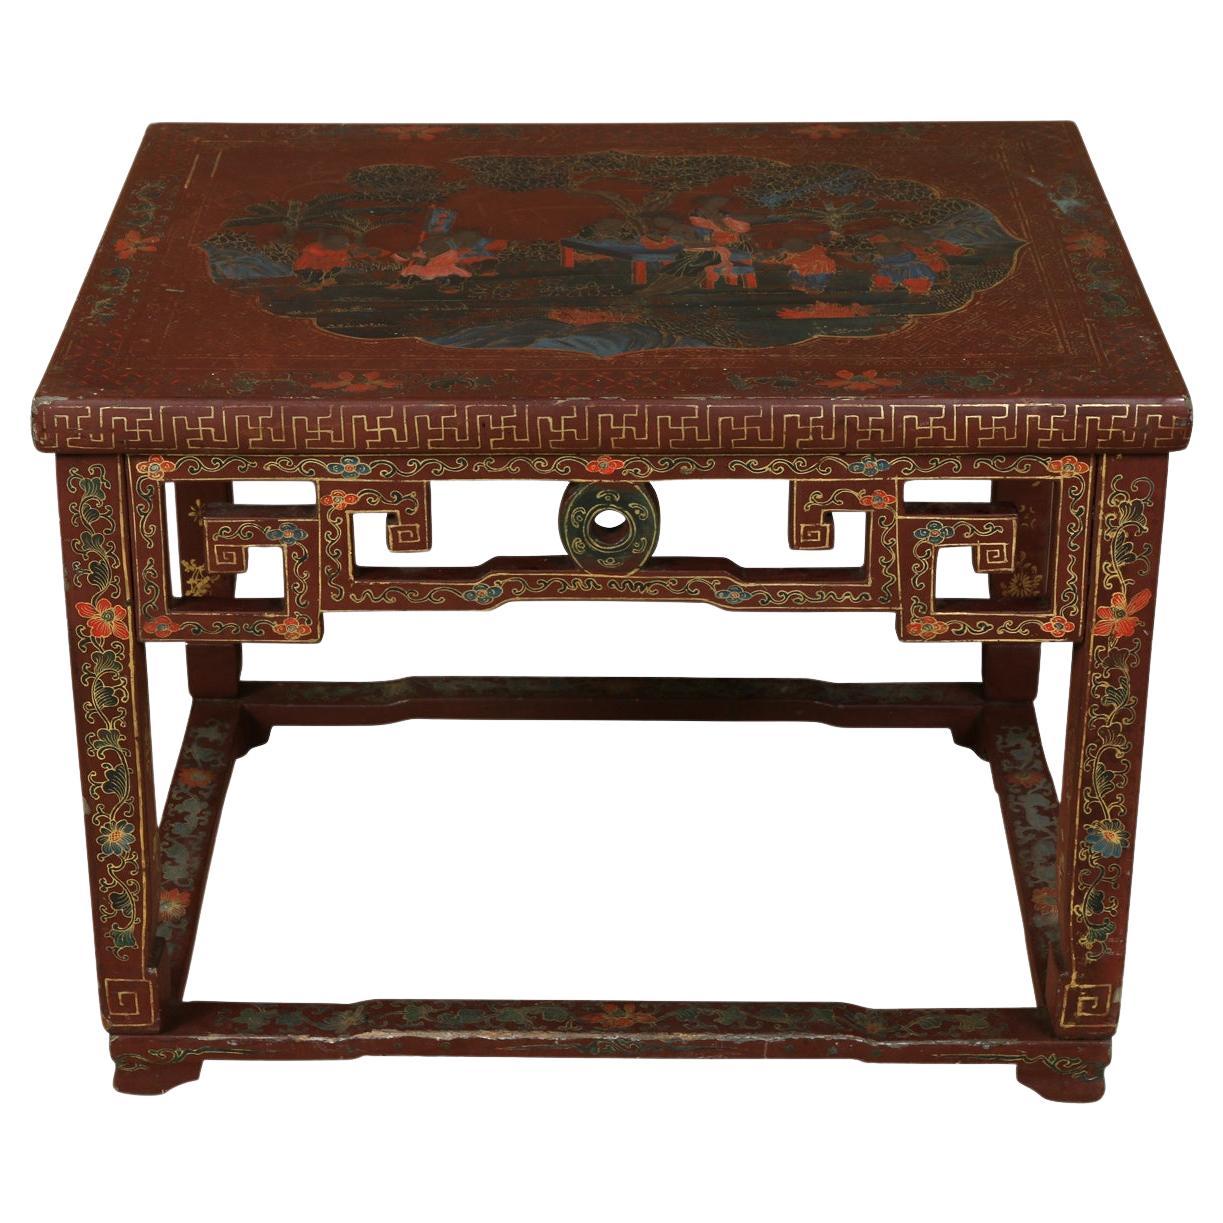 Table basse chinoise laquée rouge avec détails dorés complexes